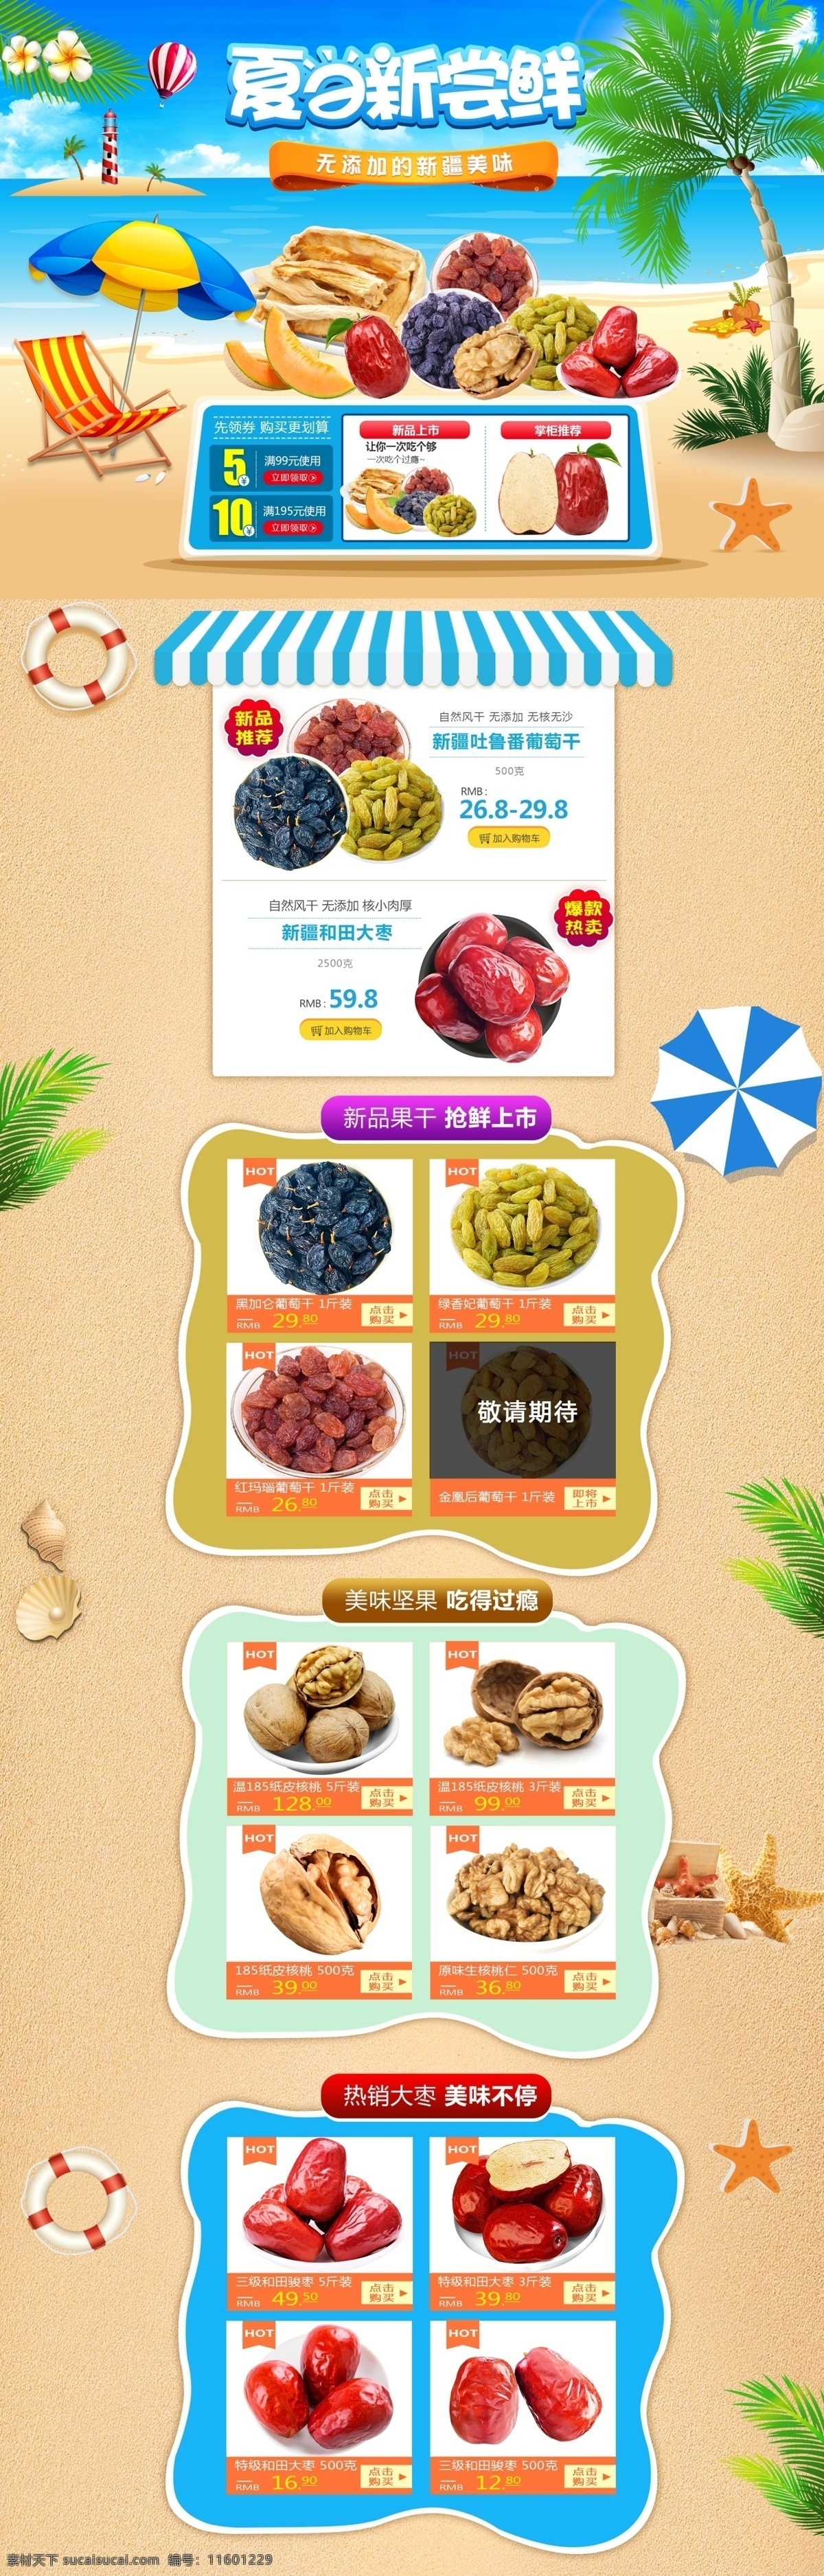 夏日 新 尝鲜 淘宝 宣传海报 夏 新品 红枣 夏季 新疆特产 坚果 果干 葡萄干